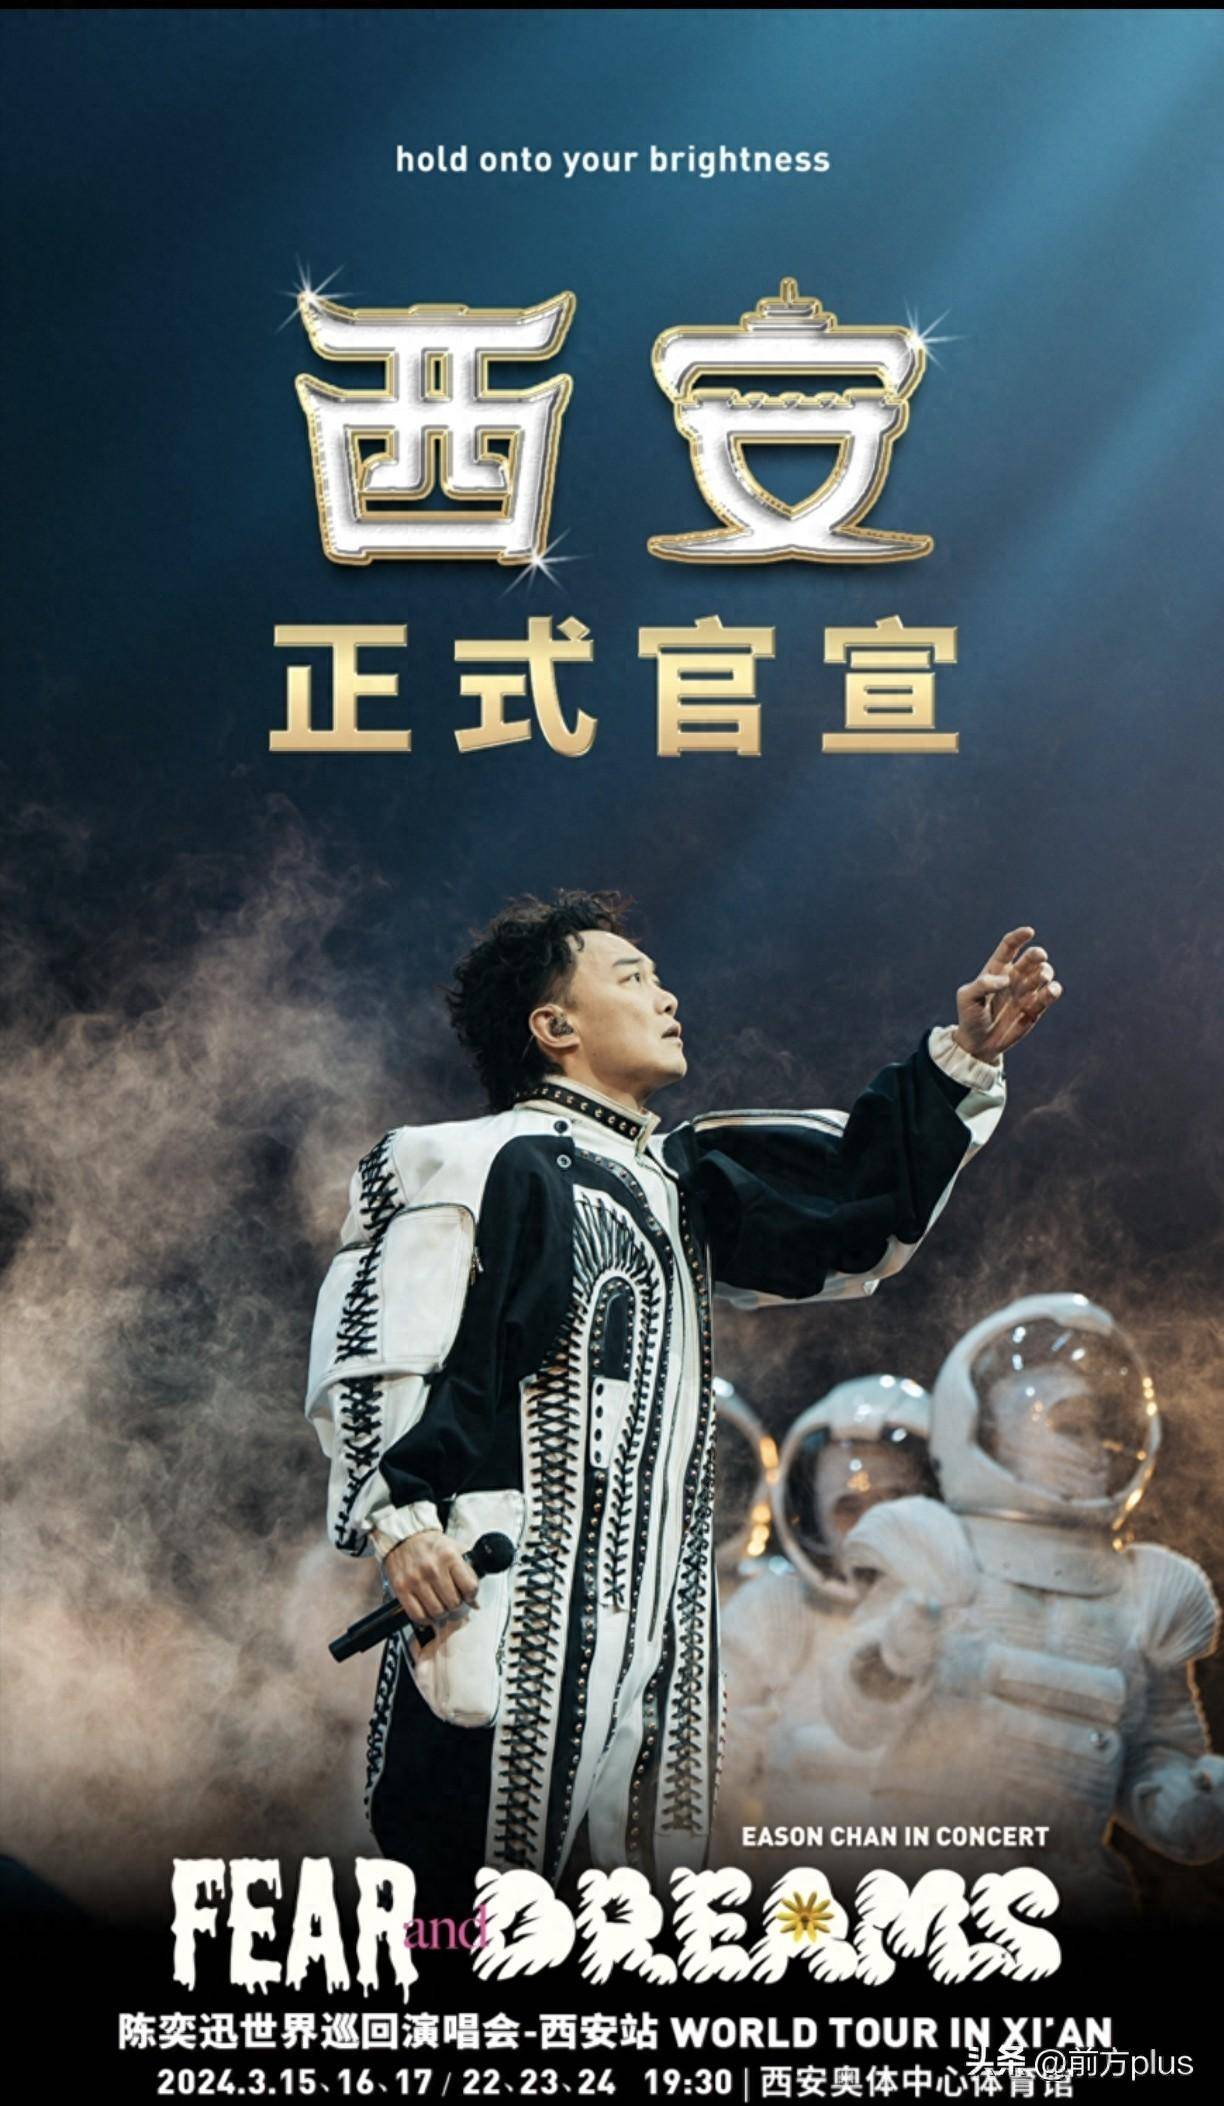 自2022年12月开始,陈奕迅fear and dreams世界巡回演唱会已先后走过